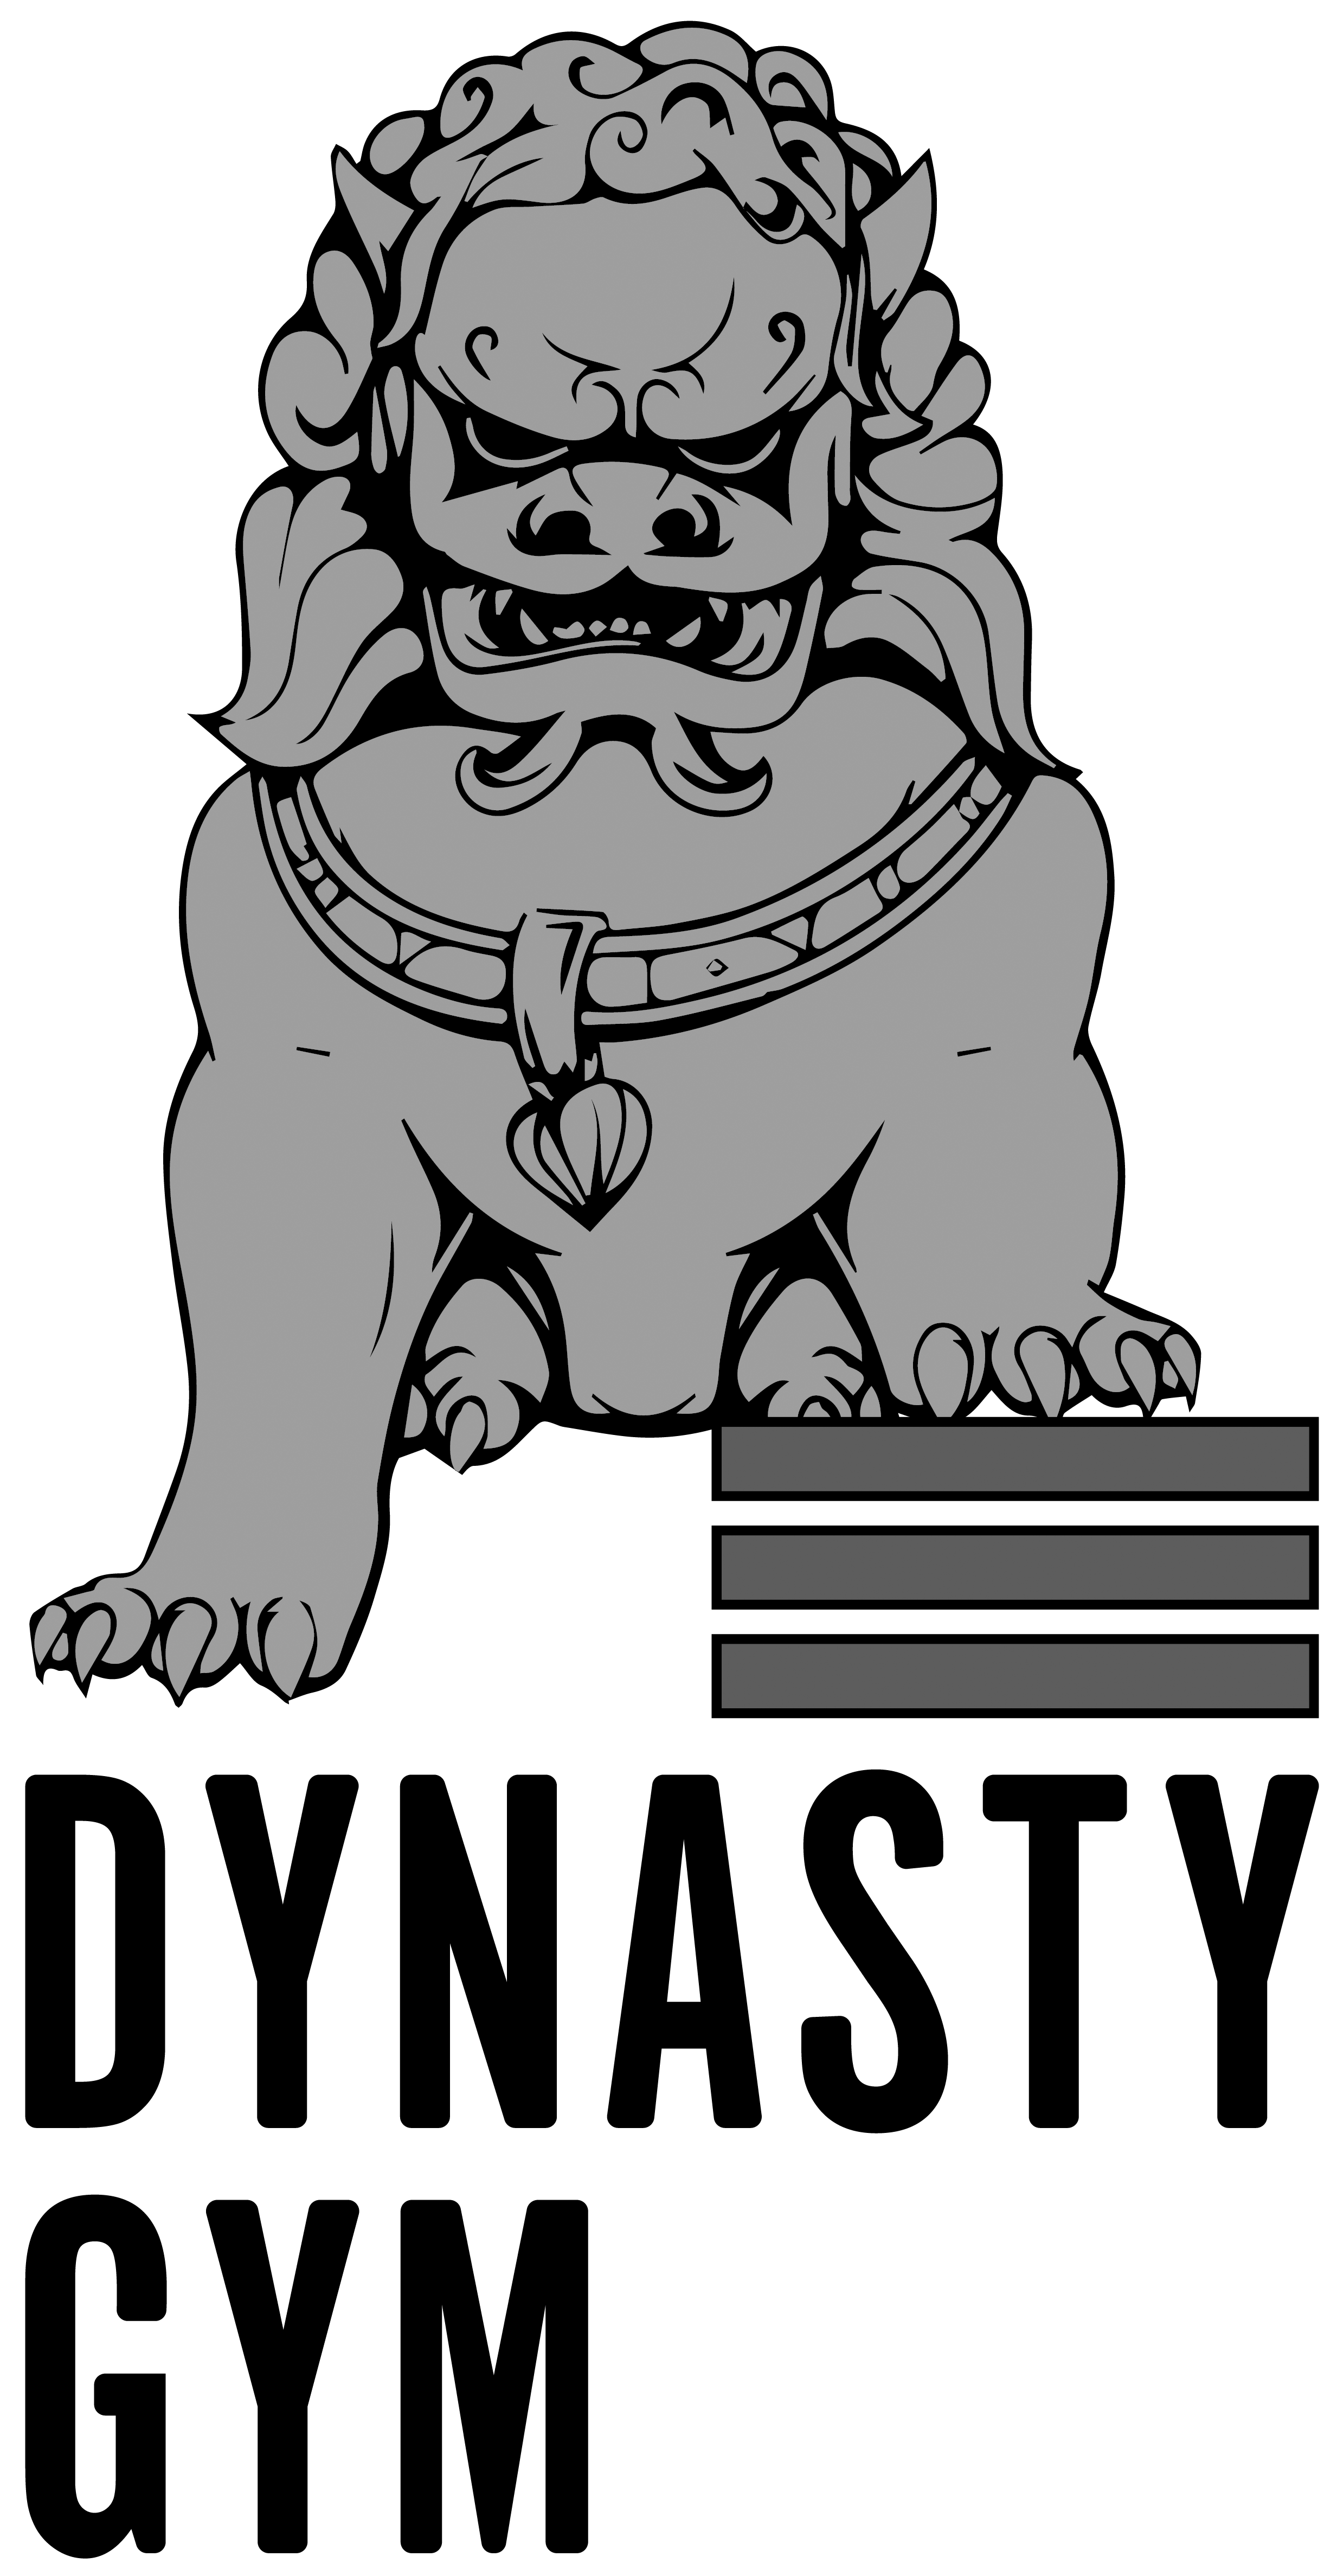 dynastygym.com-(1)